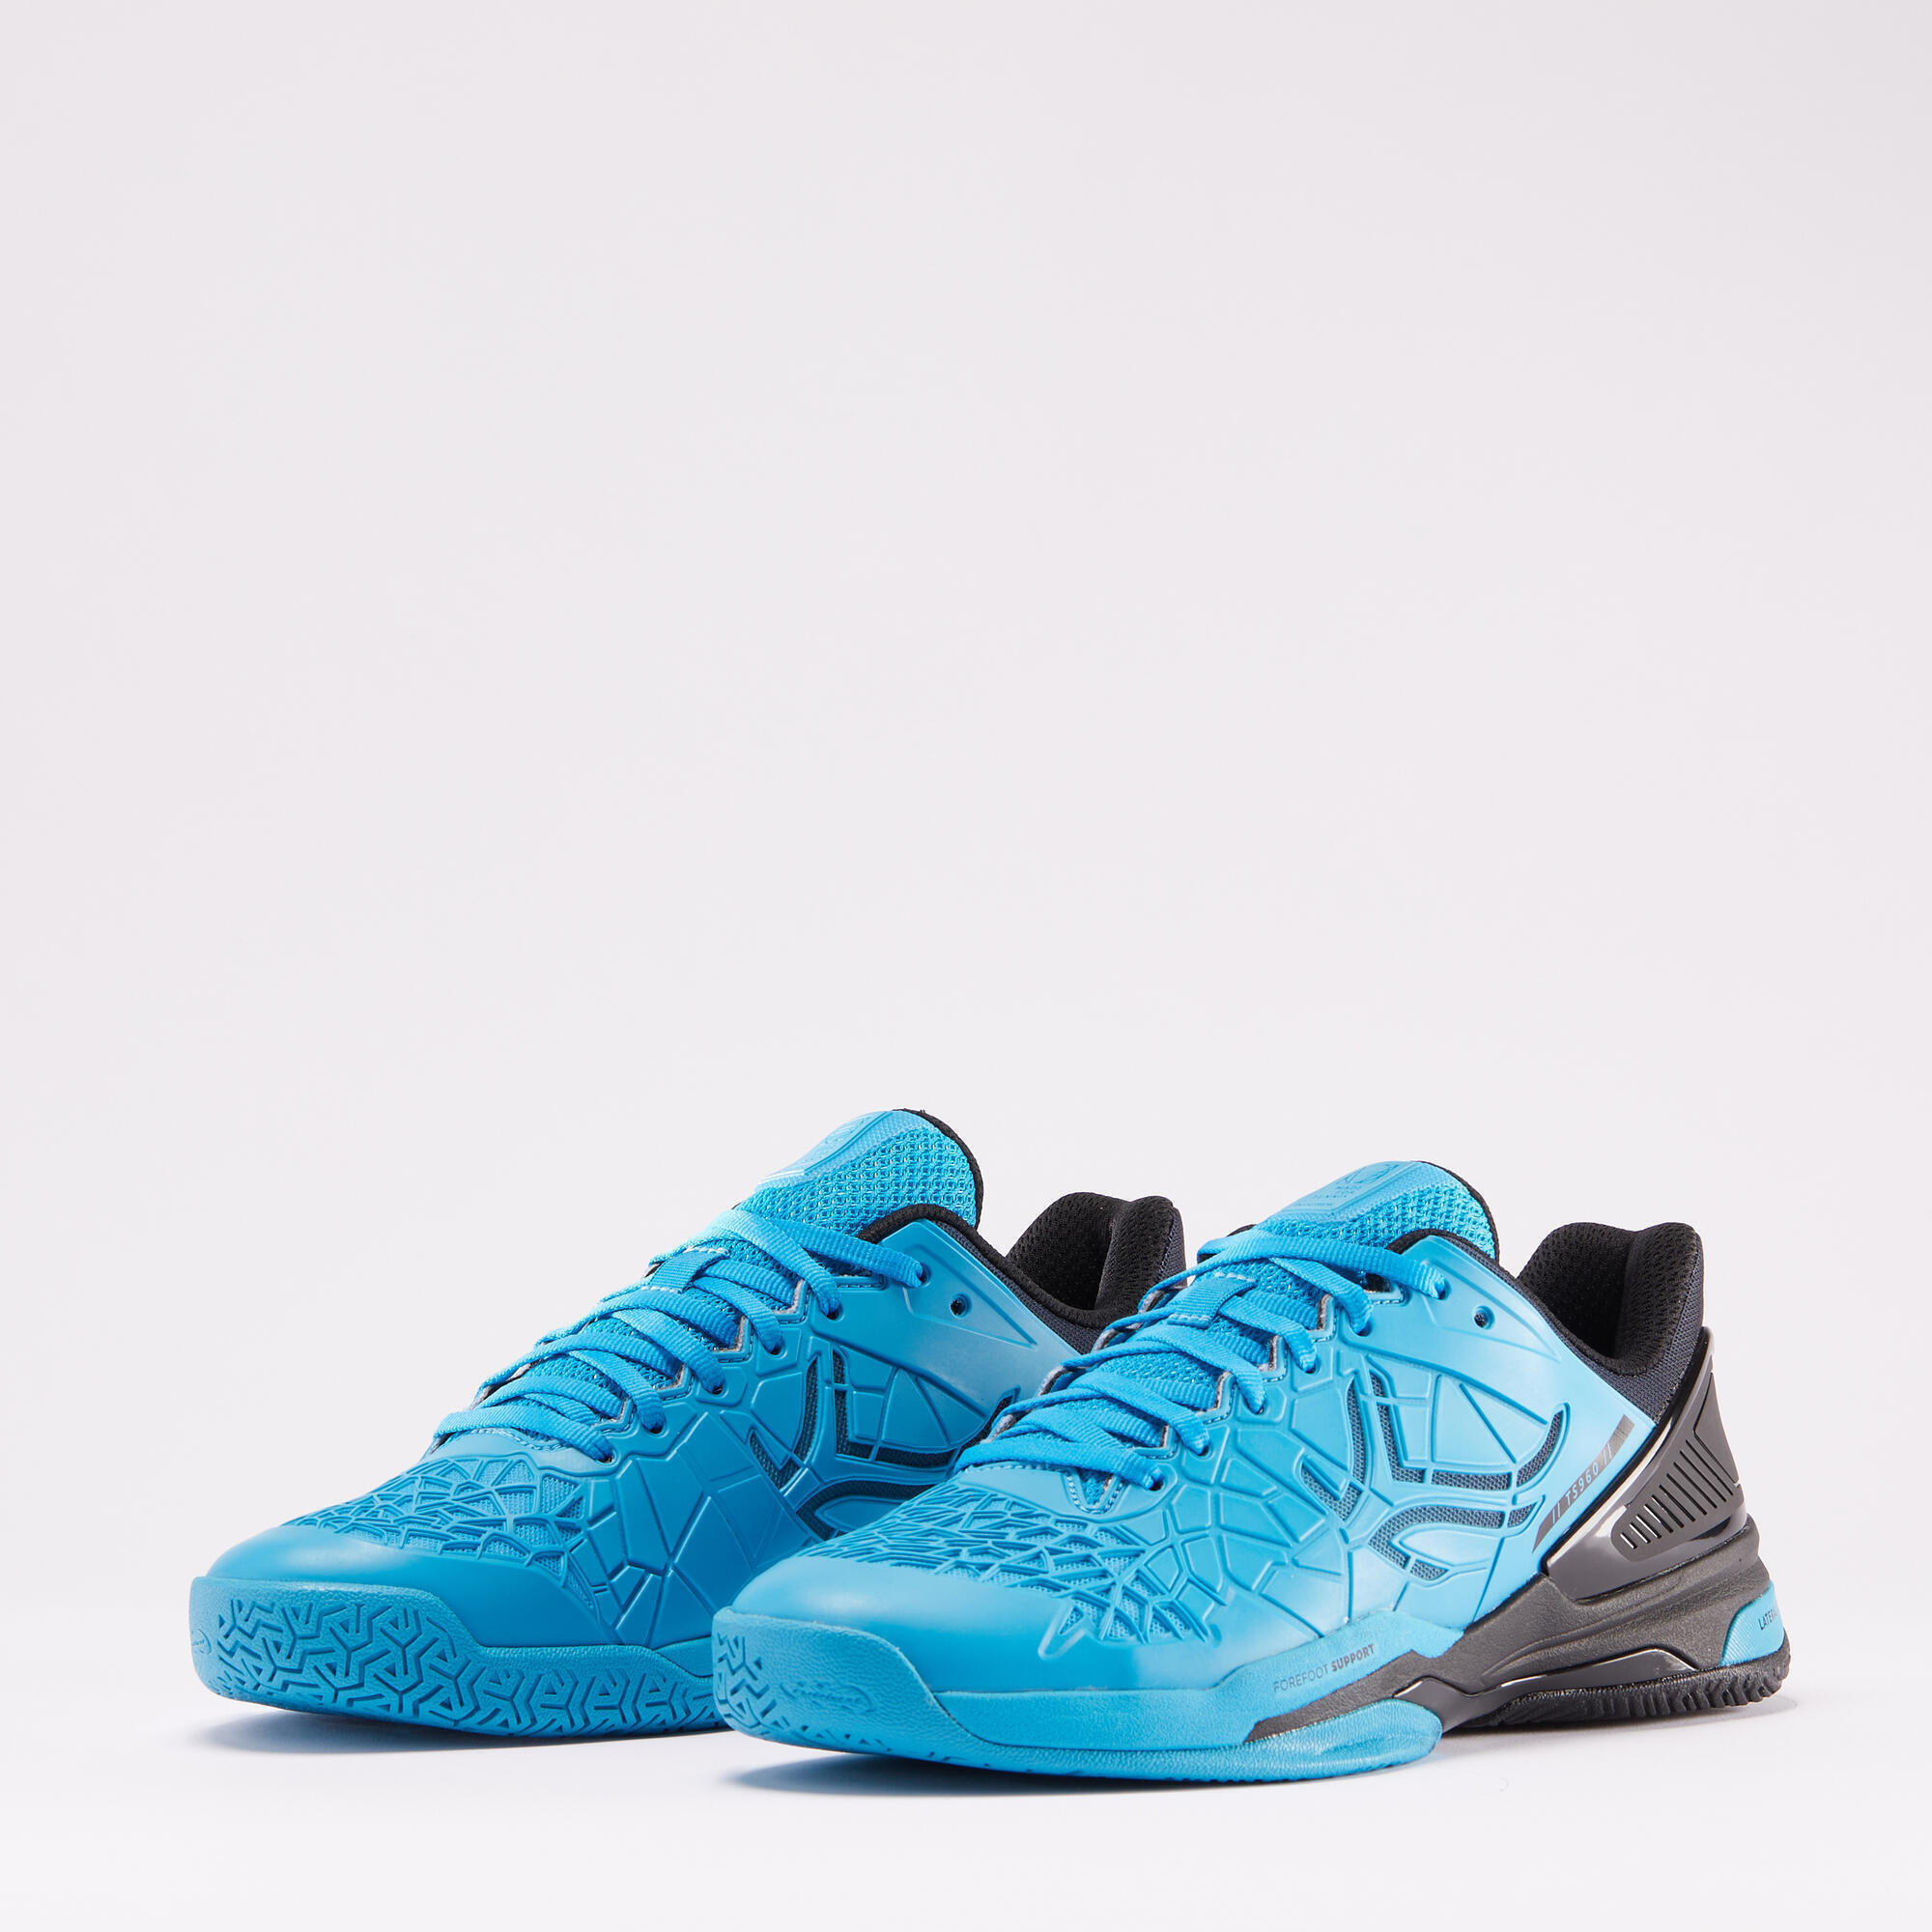 Men's Multicourt Tennis Shoes Strong Pro - Blue/Black 3/10